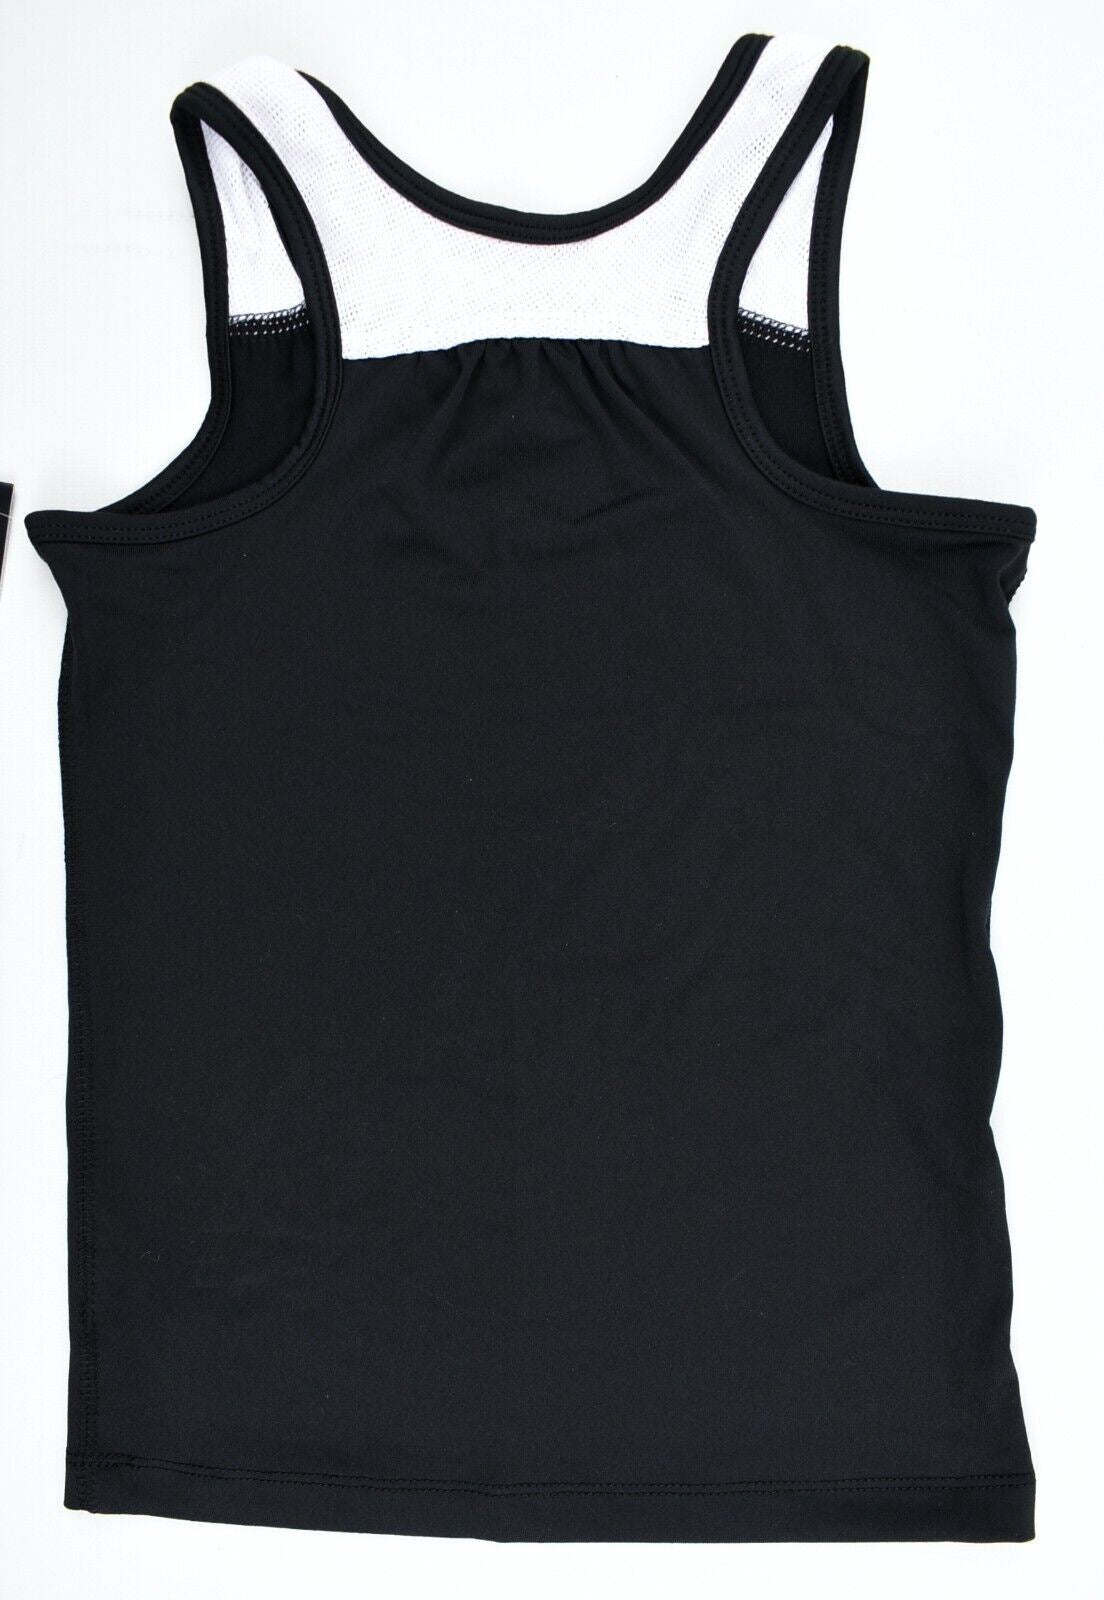 NIKE DRI-FIT Girls' Activewear Tank Top, Black/White, size 4 years